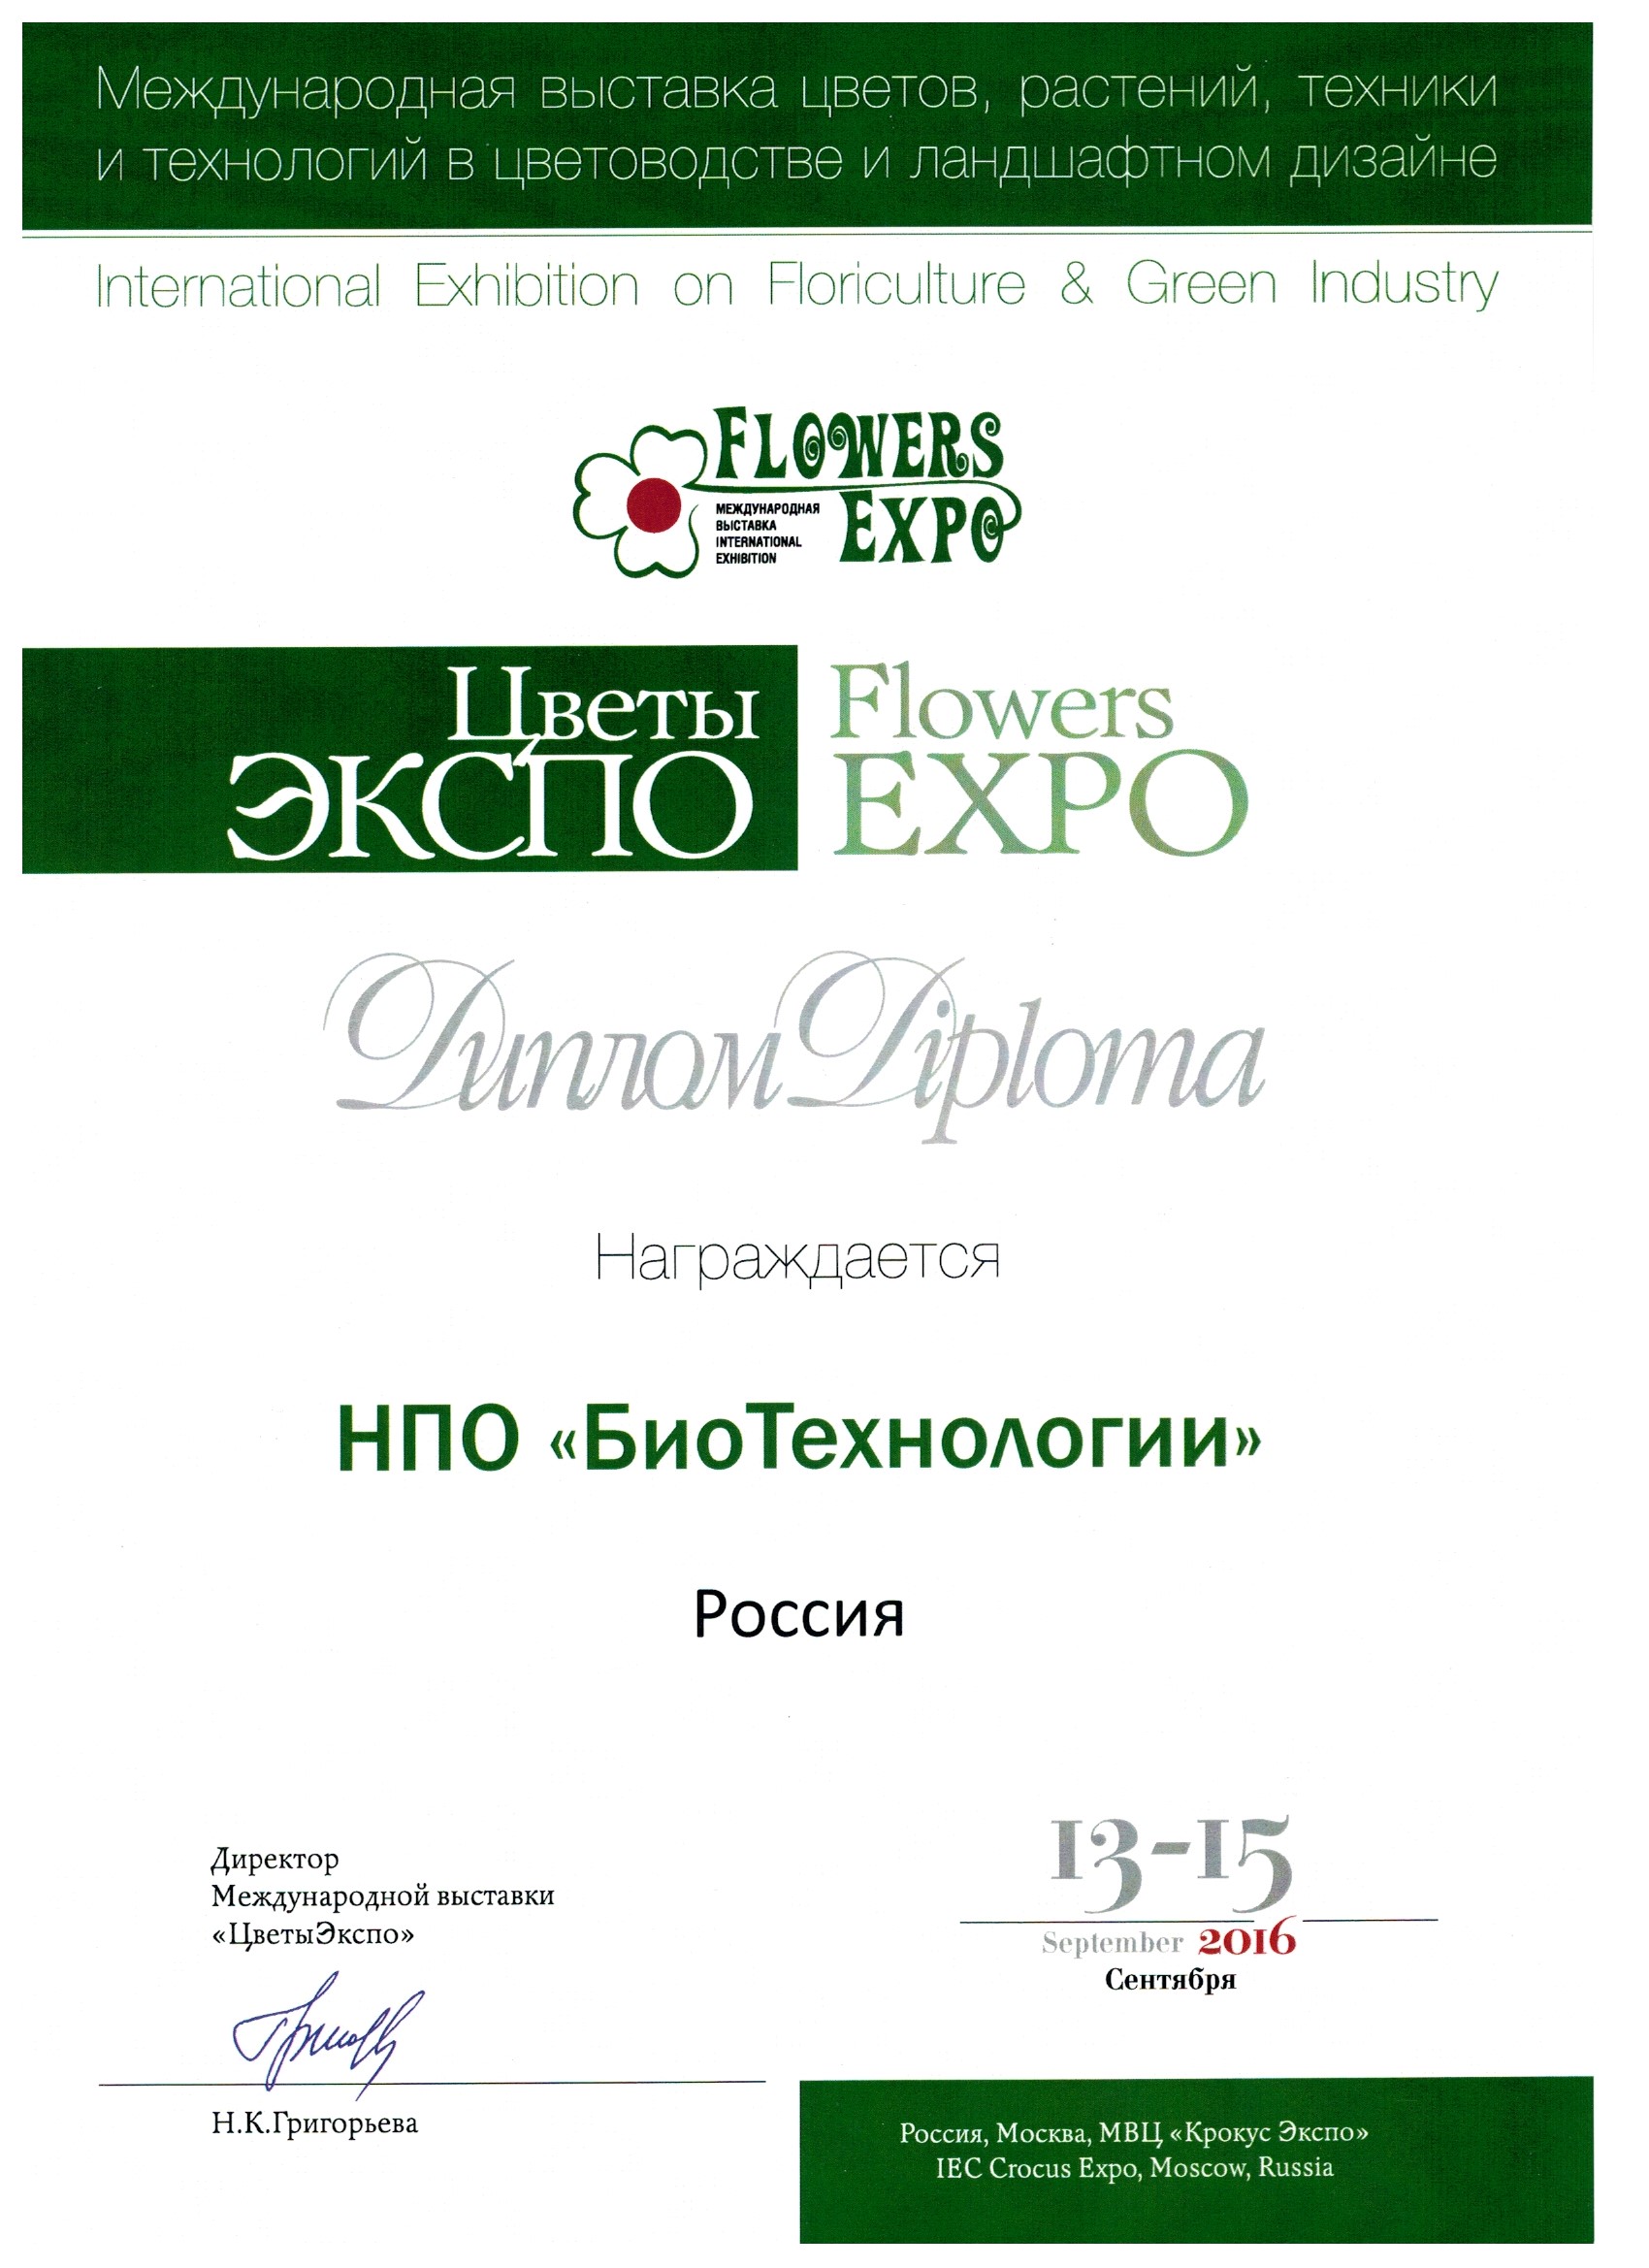 FlowersExpo 2016